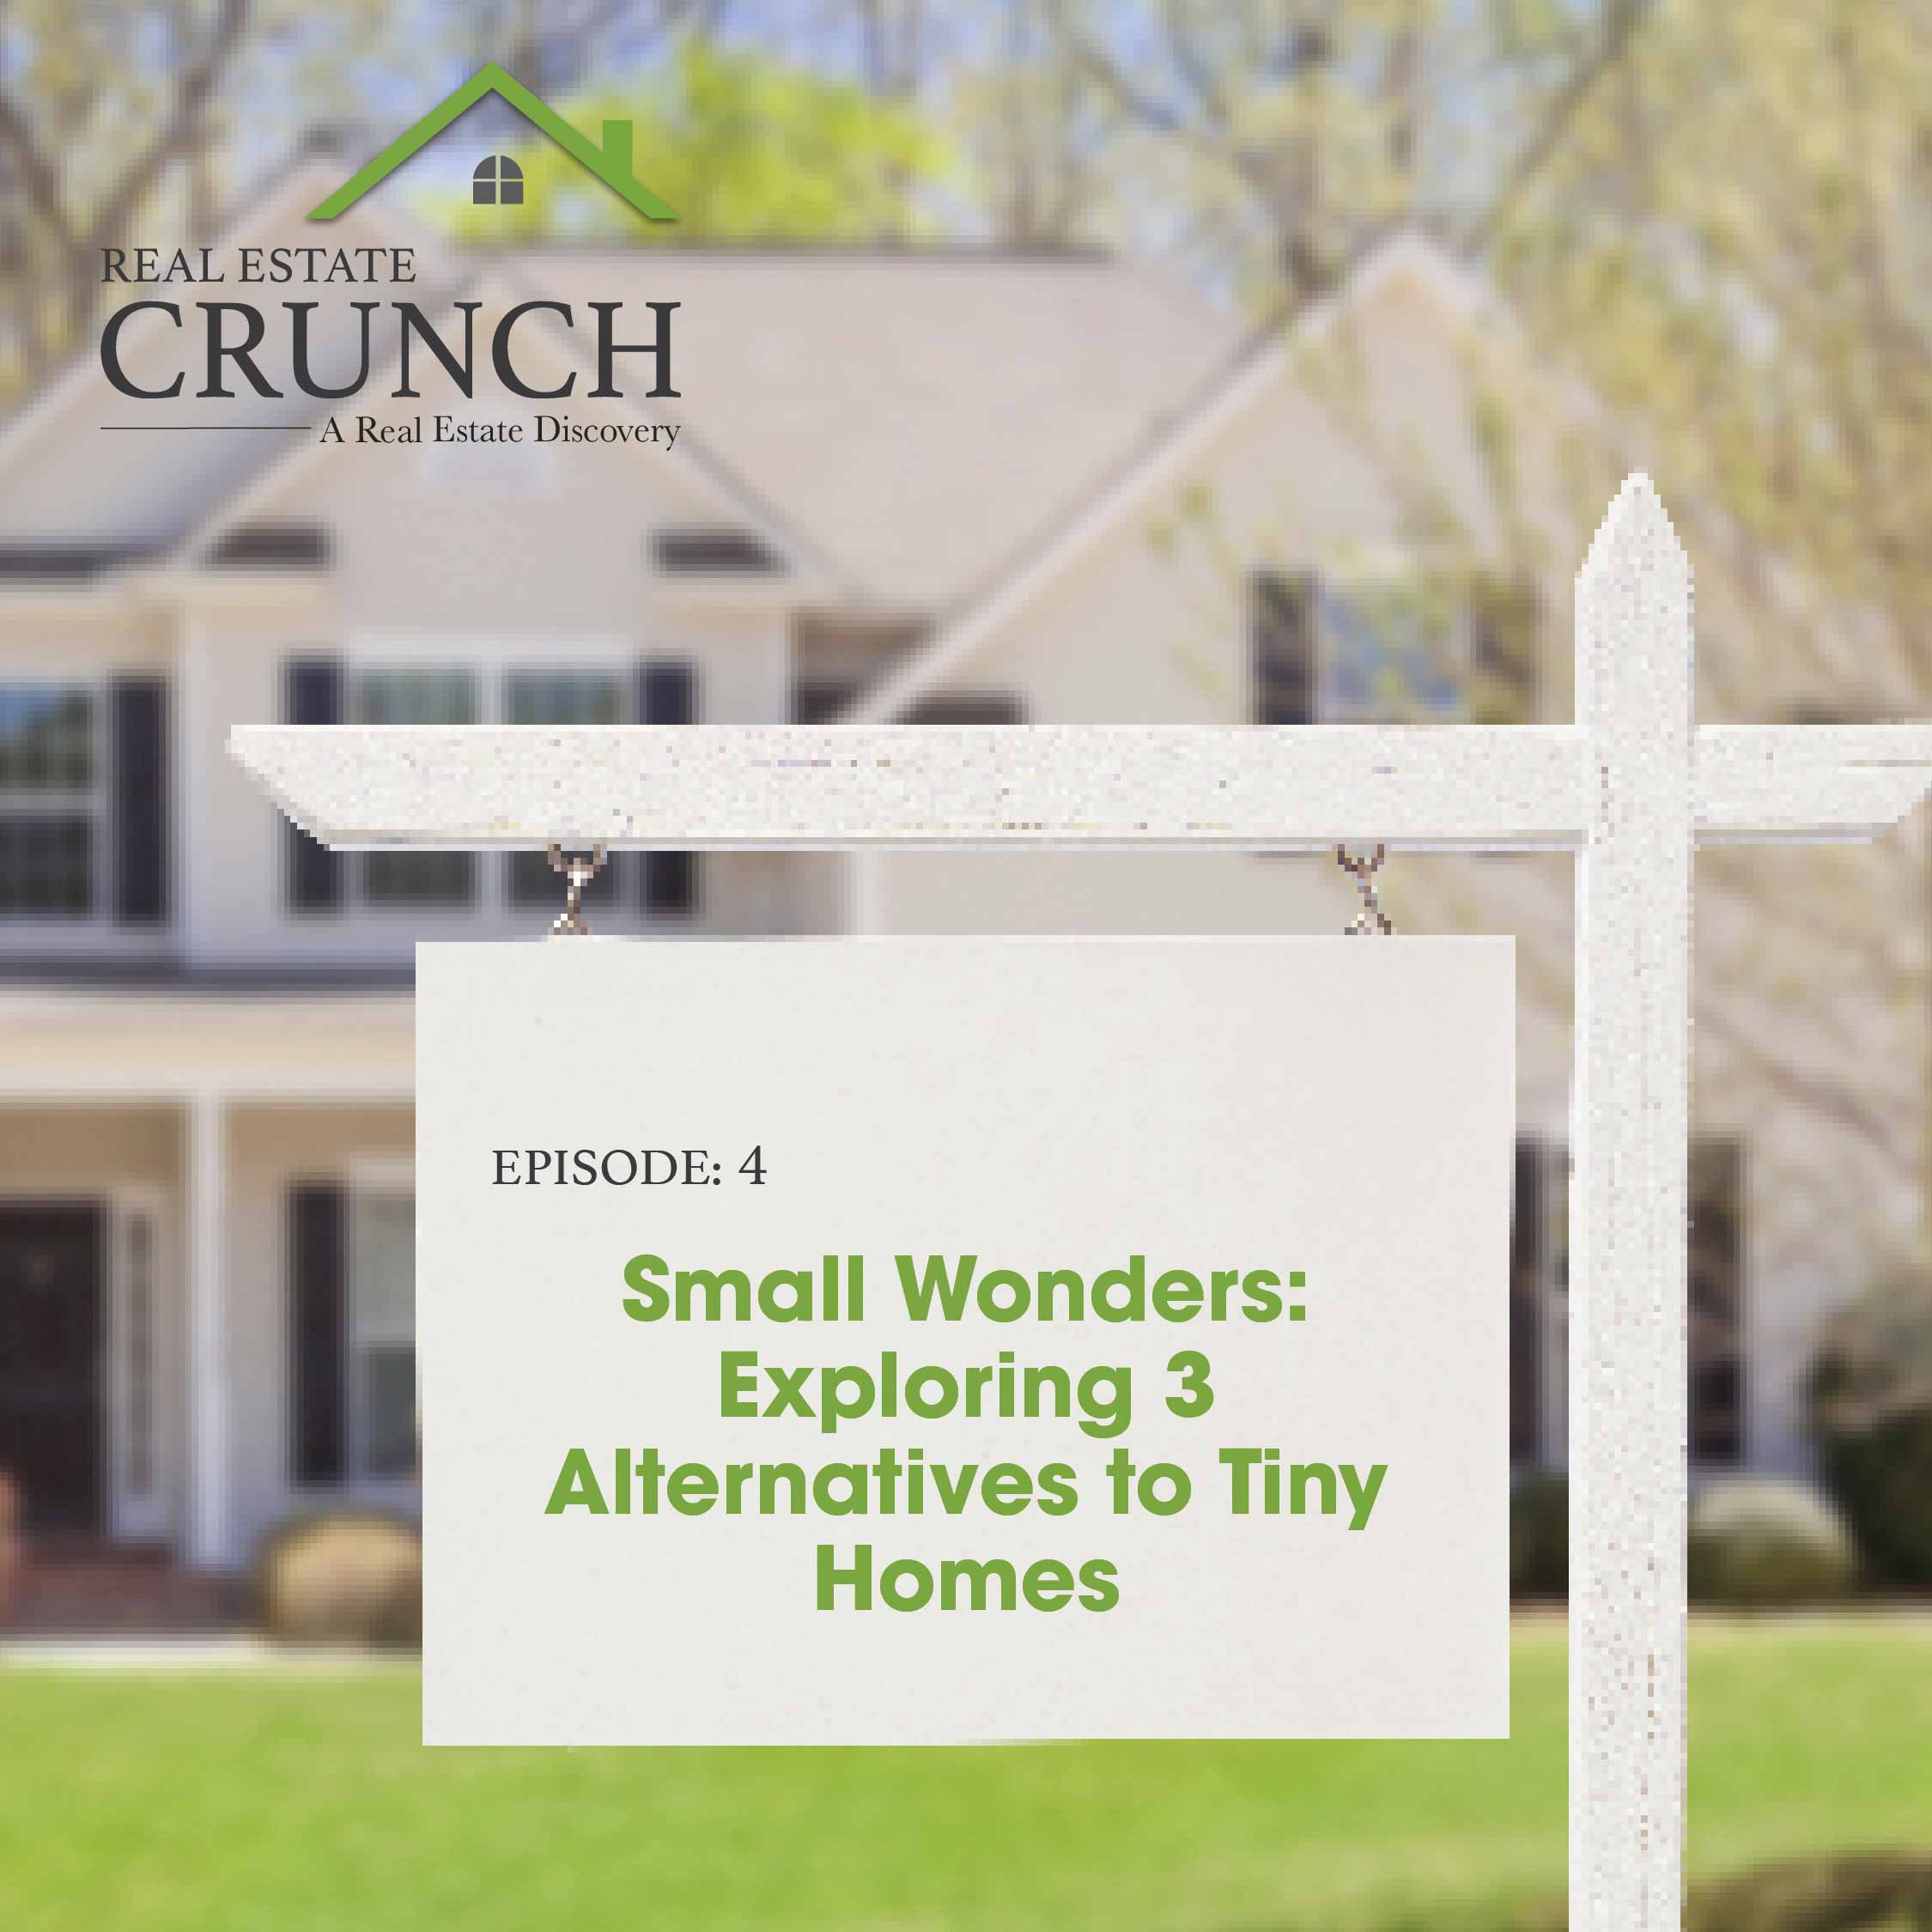 Small Wonders: Exploring 3 Alternatives to Tiny Homes